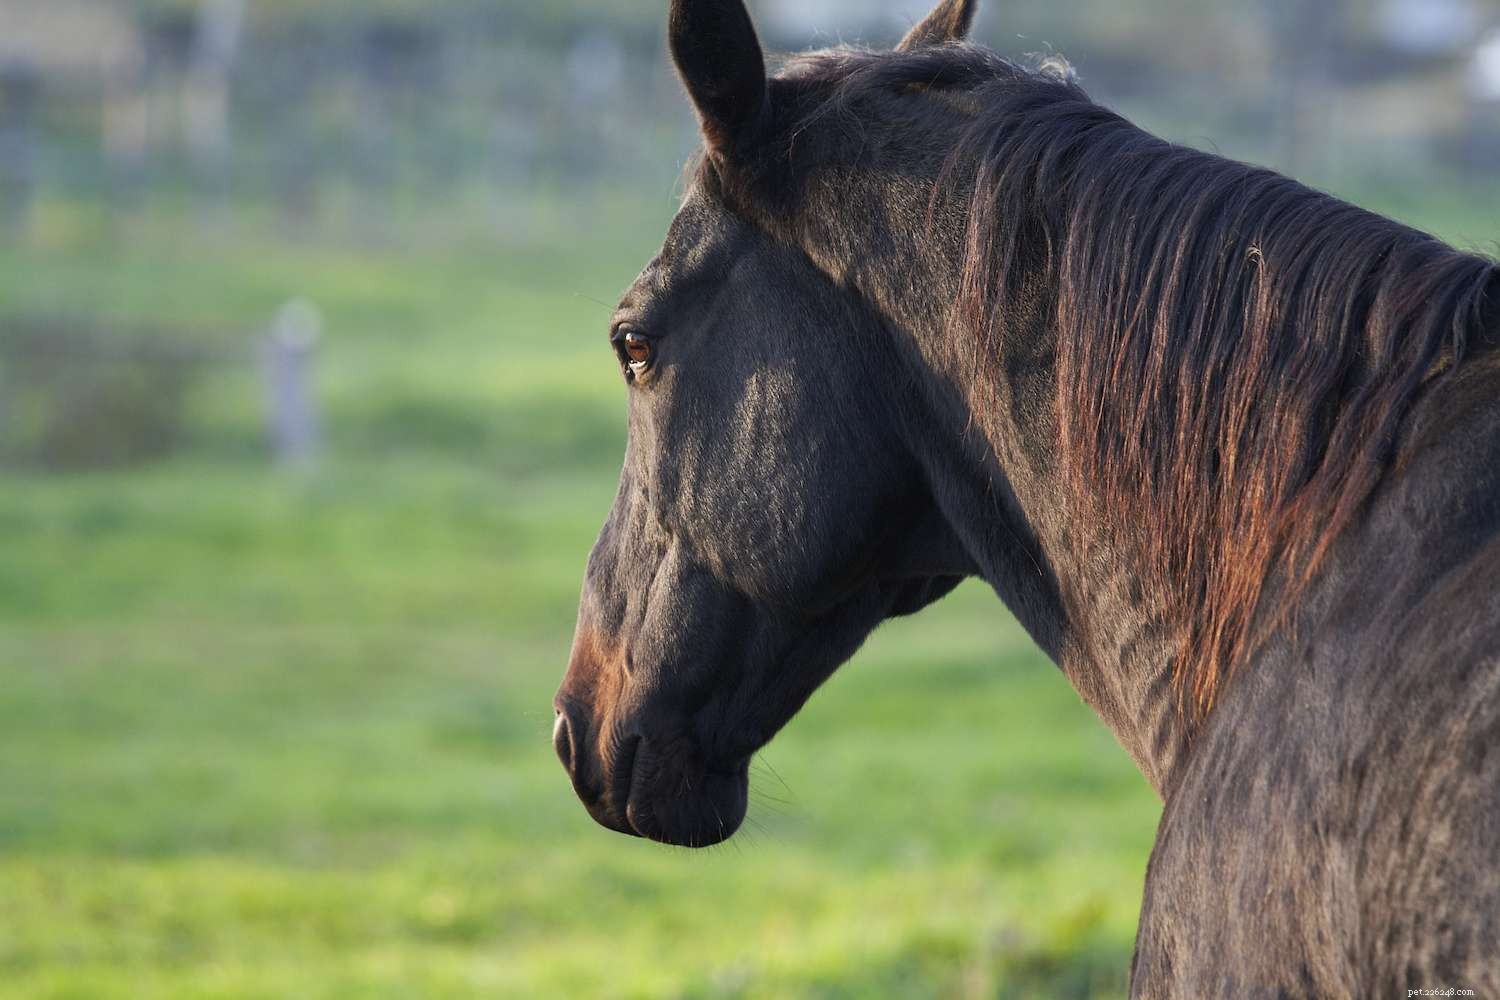 American Quarter Horse:perfil da raça